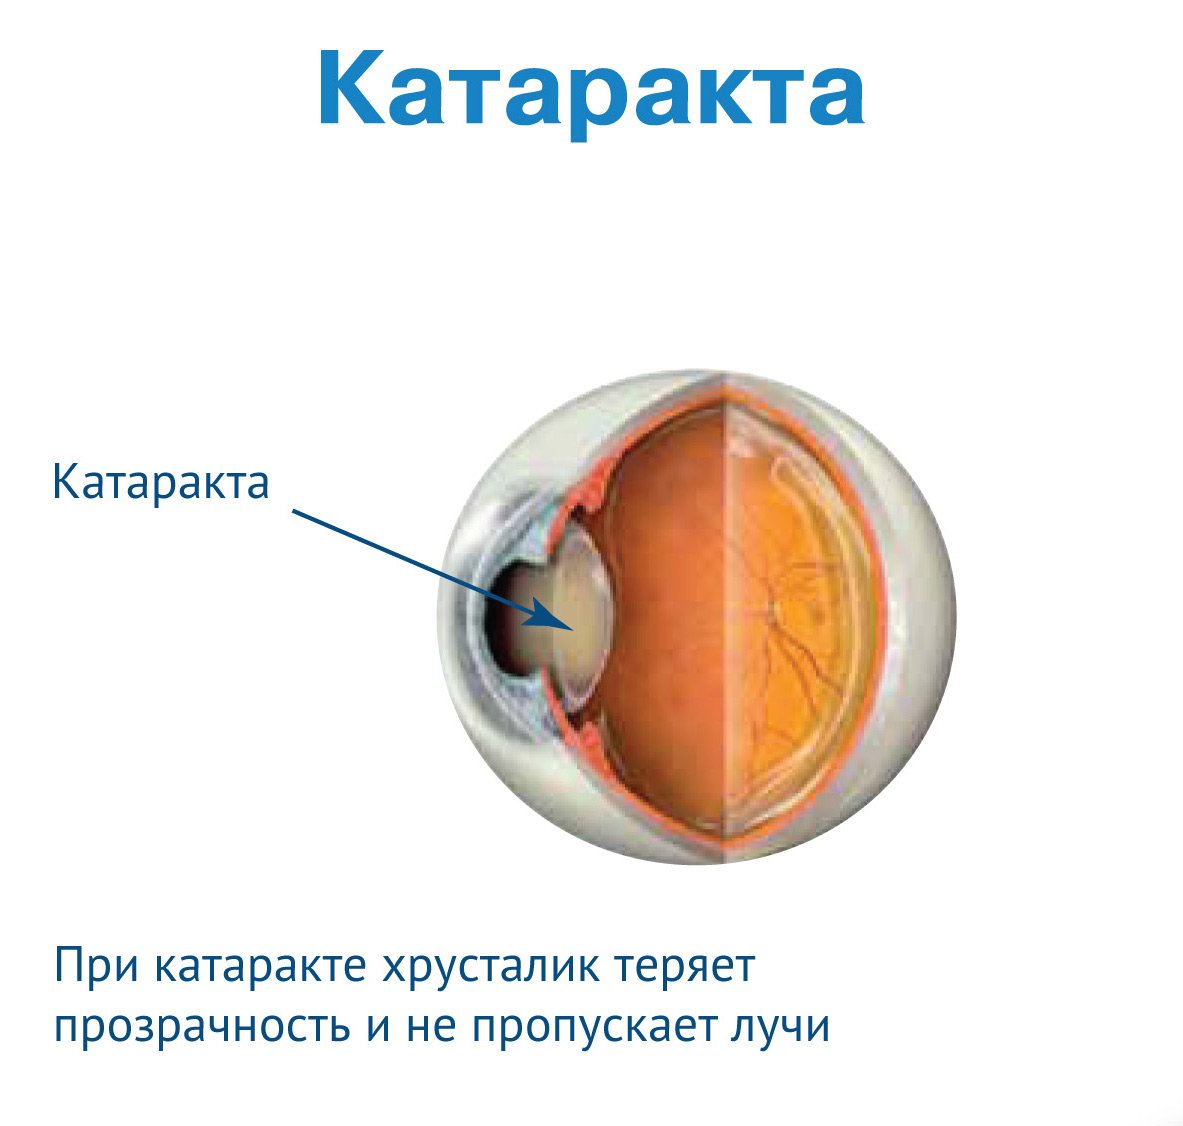 Симптомы катаракты у взрослых